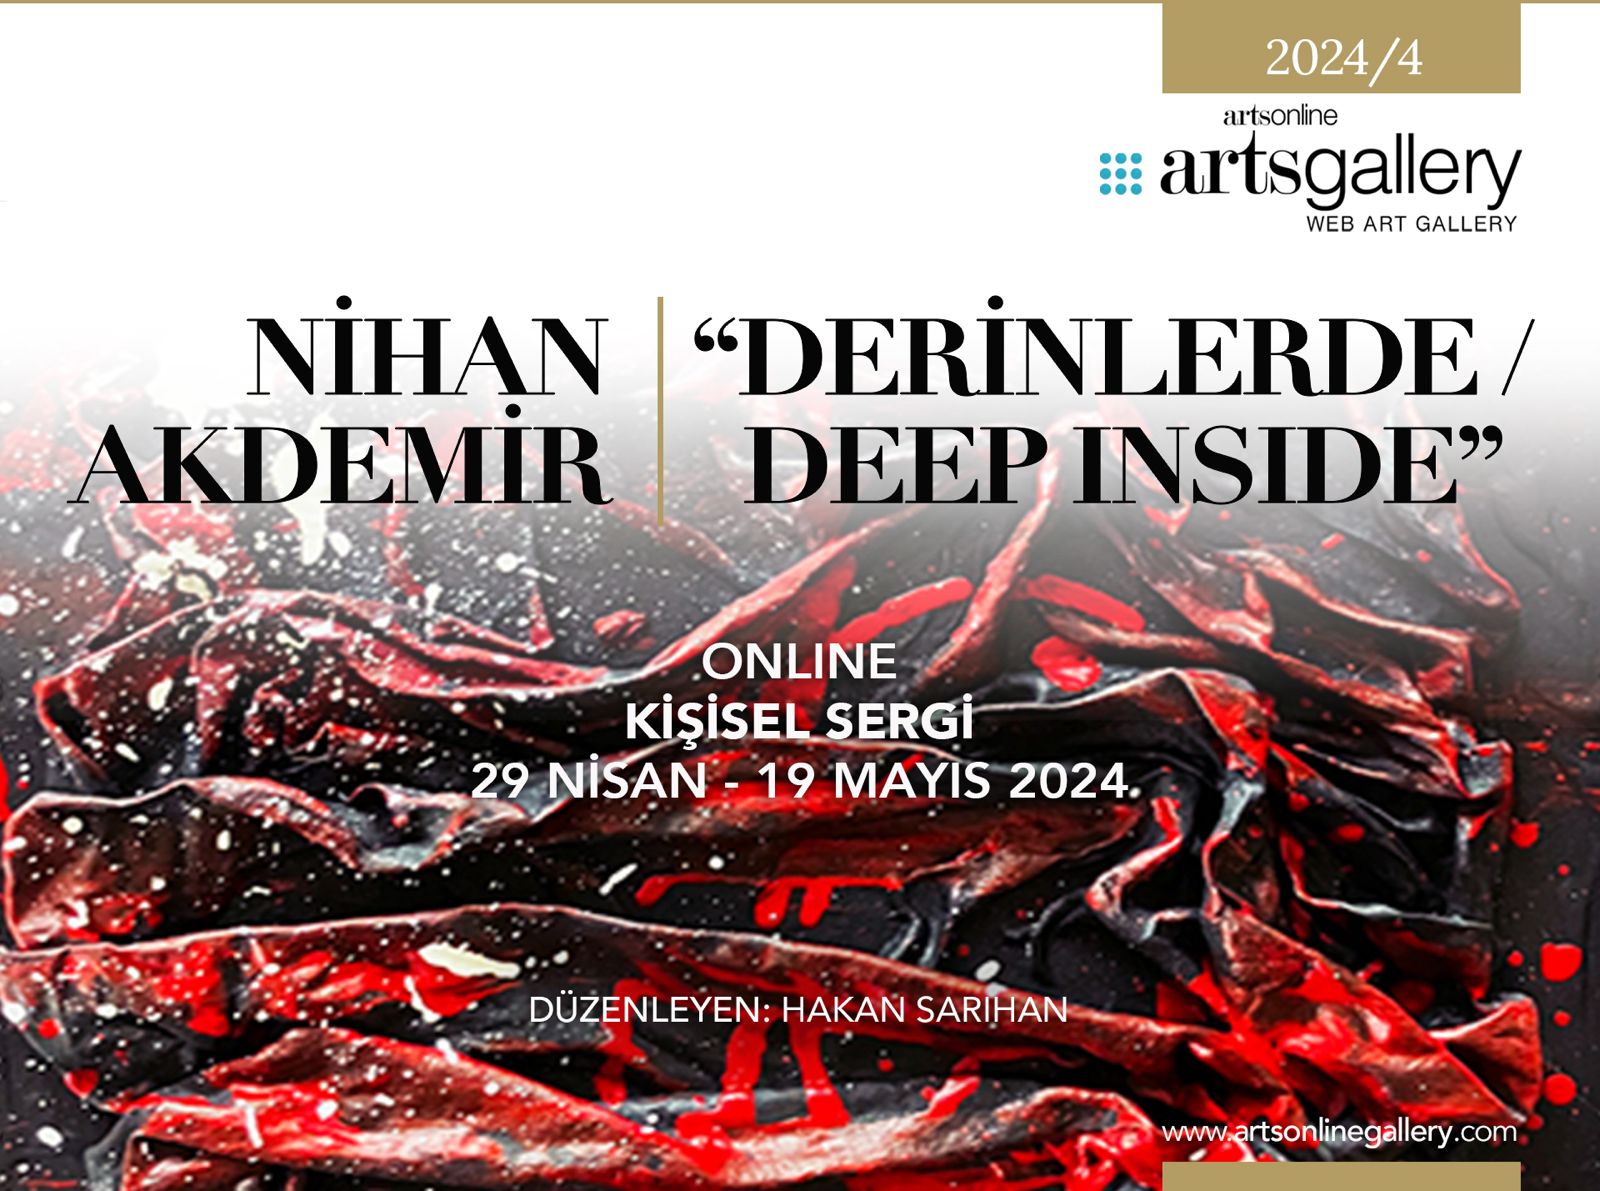 Nihan Akdemir “Derinlerde / Deep Inside” Sergisi